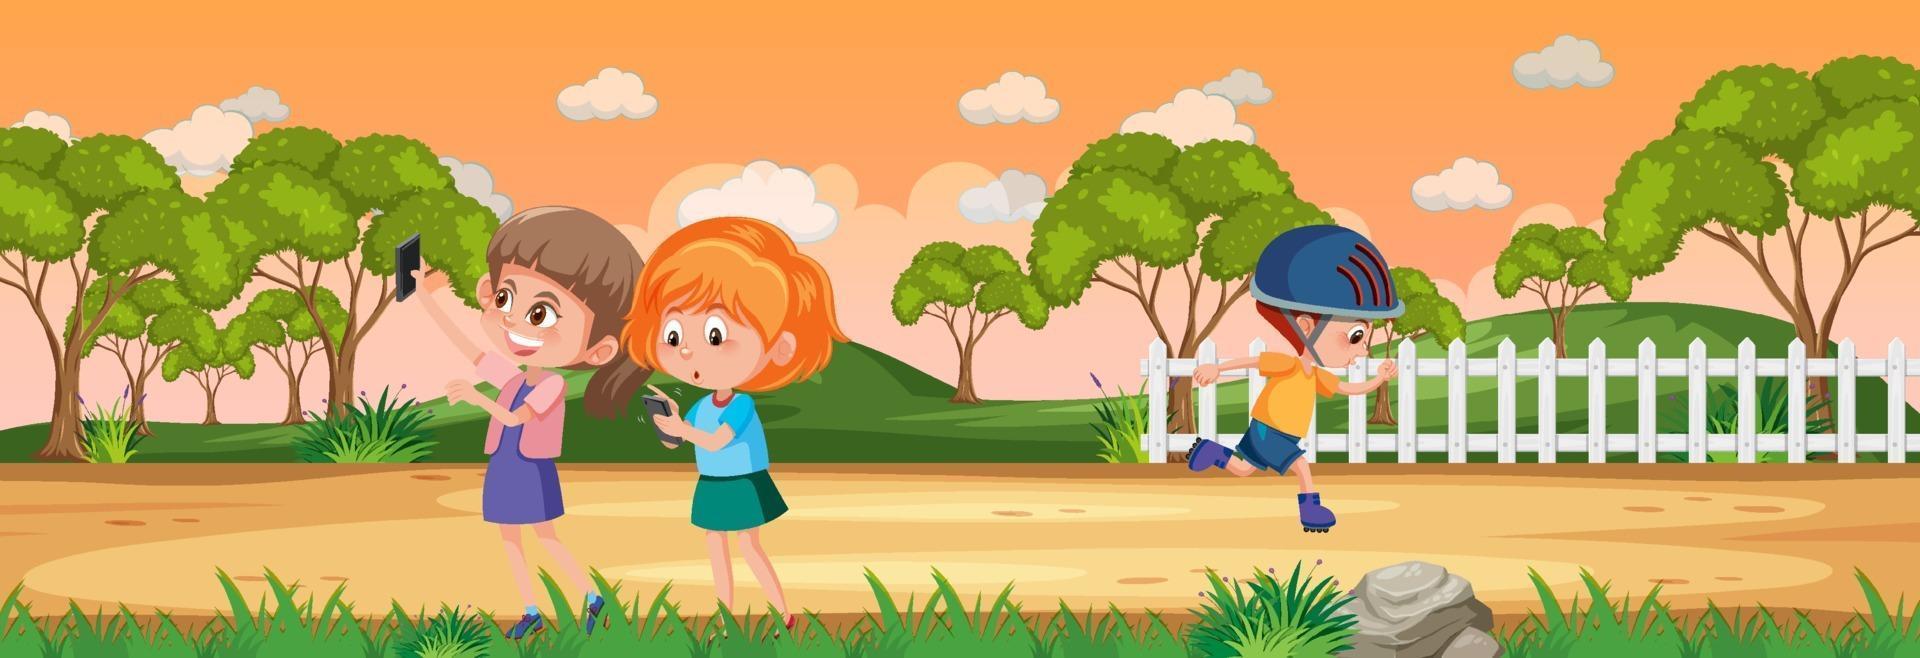 scena del paesaggio panoramico con molti personaggi dei cartoni animati per bambini vettore